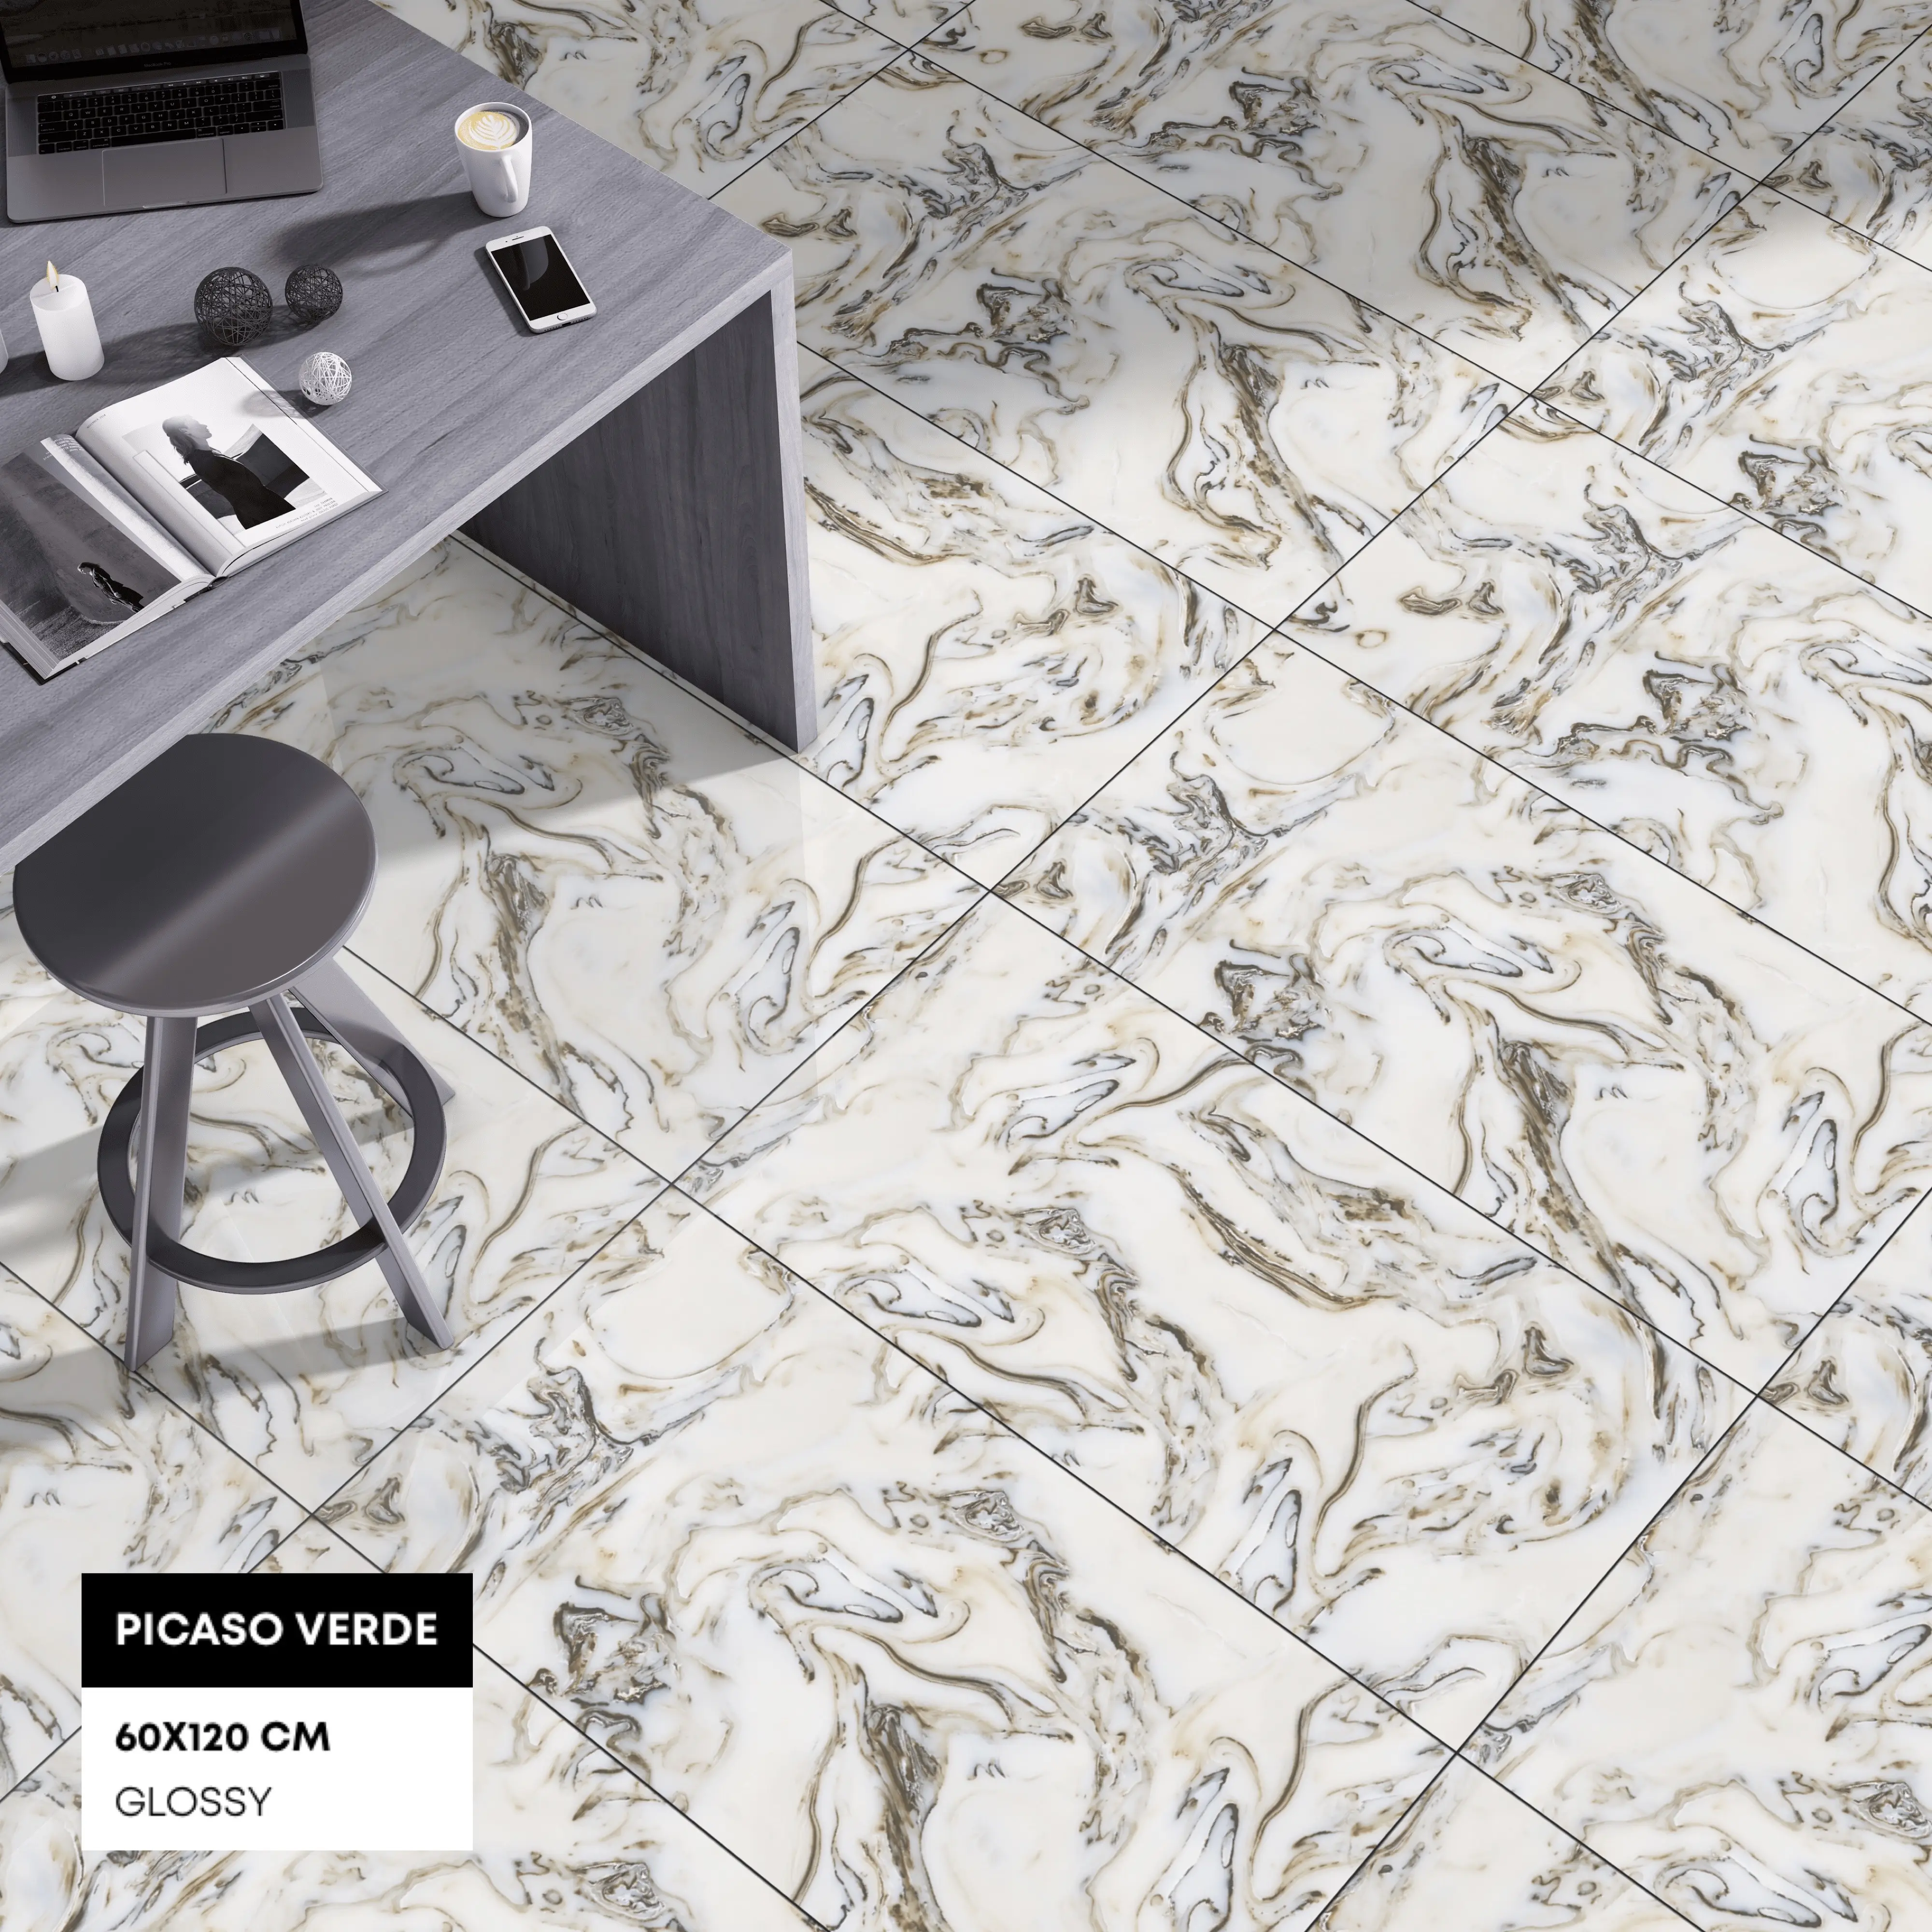 Sempreverde modello speciale superficie porcellana piastrelle per pavimenti smaltate per uso commerciale.